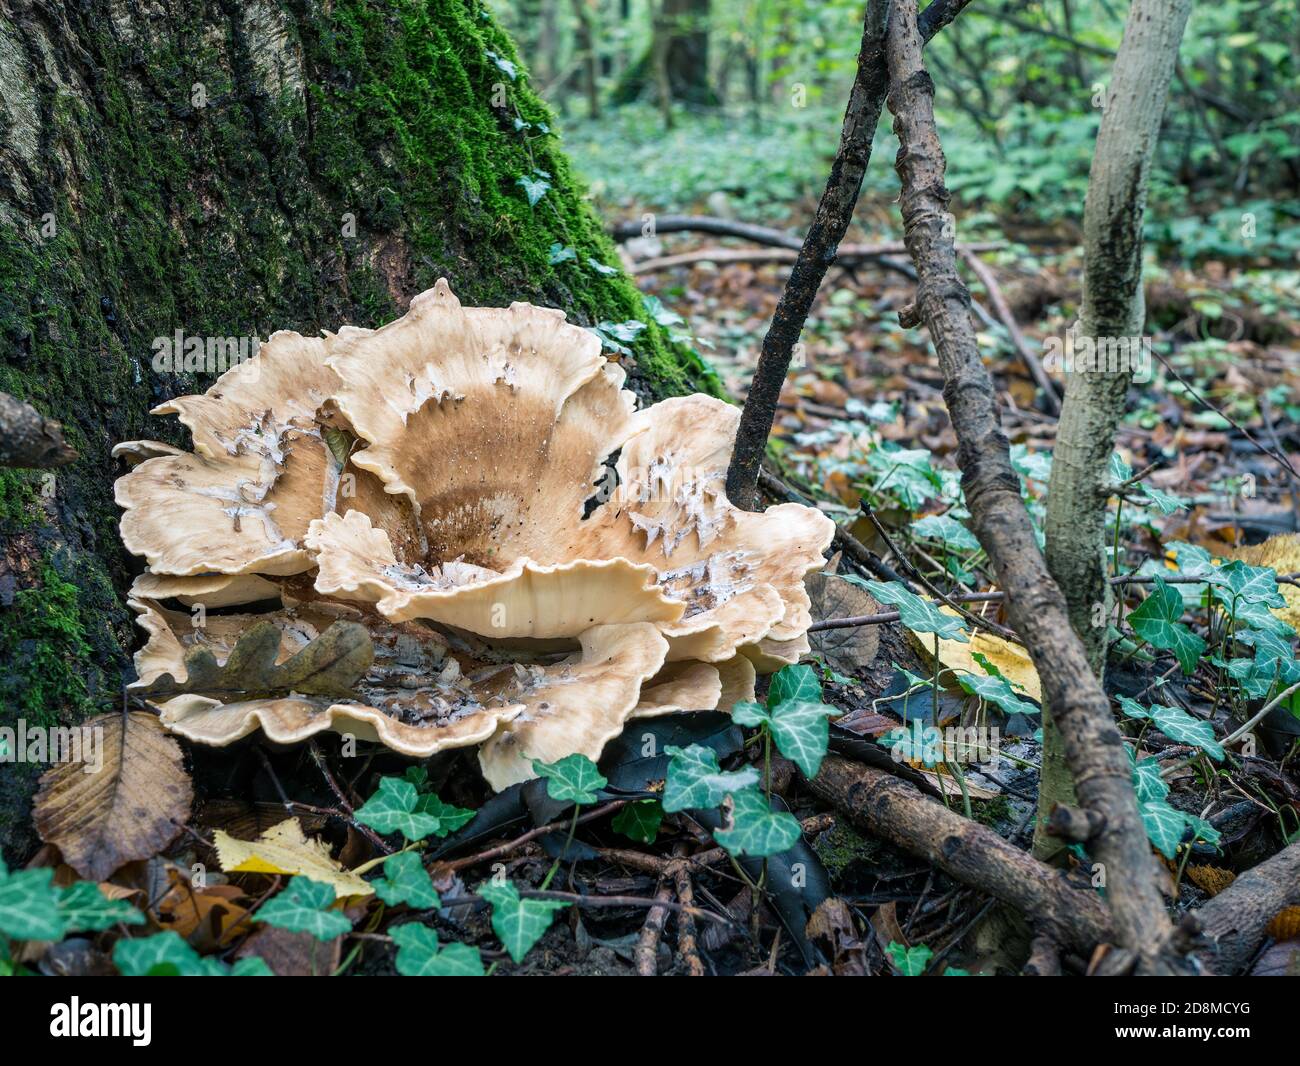 Grifola frondosa également connue sous le nom de poule des bois poussant à la base d'un arbre dans la forêt. Grifola frondosa est un champignon polypore Banque D'Images